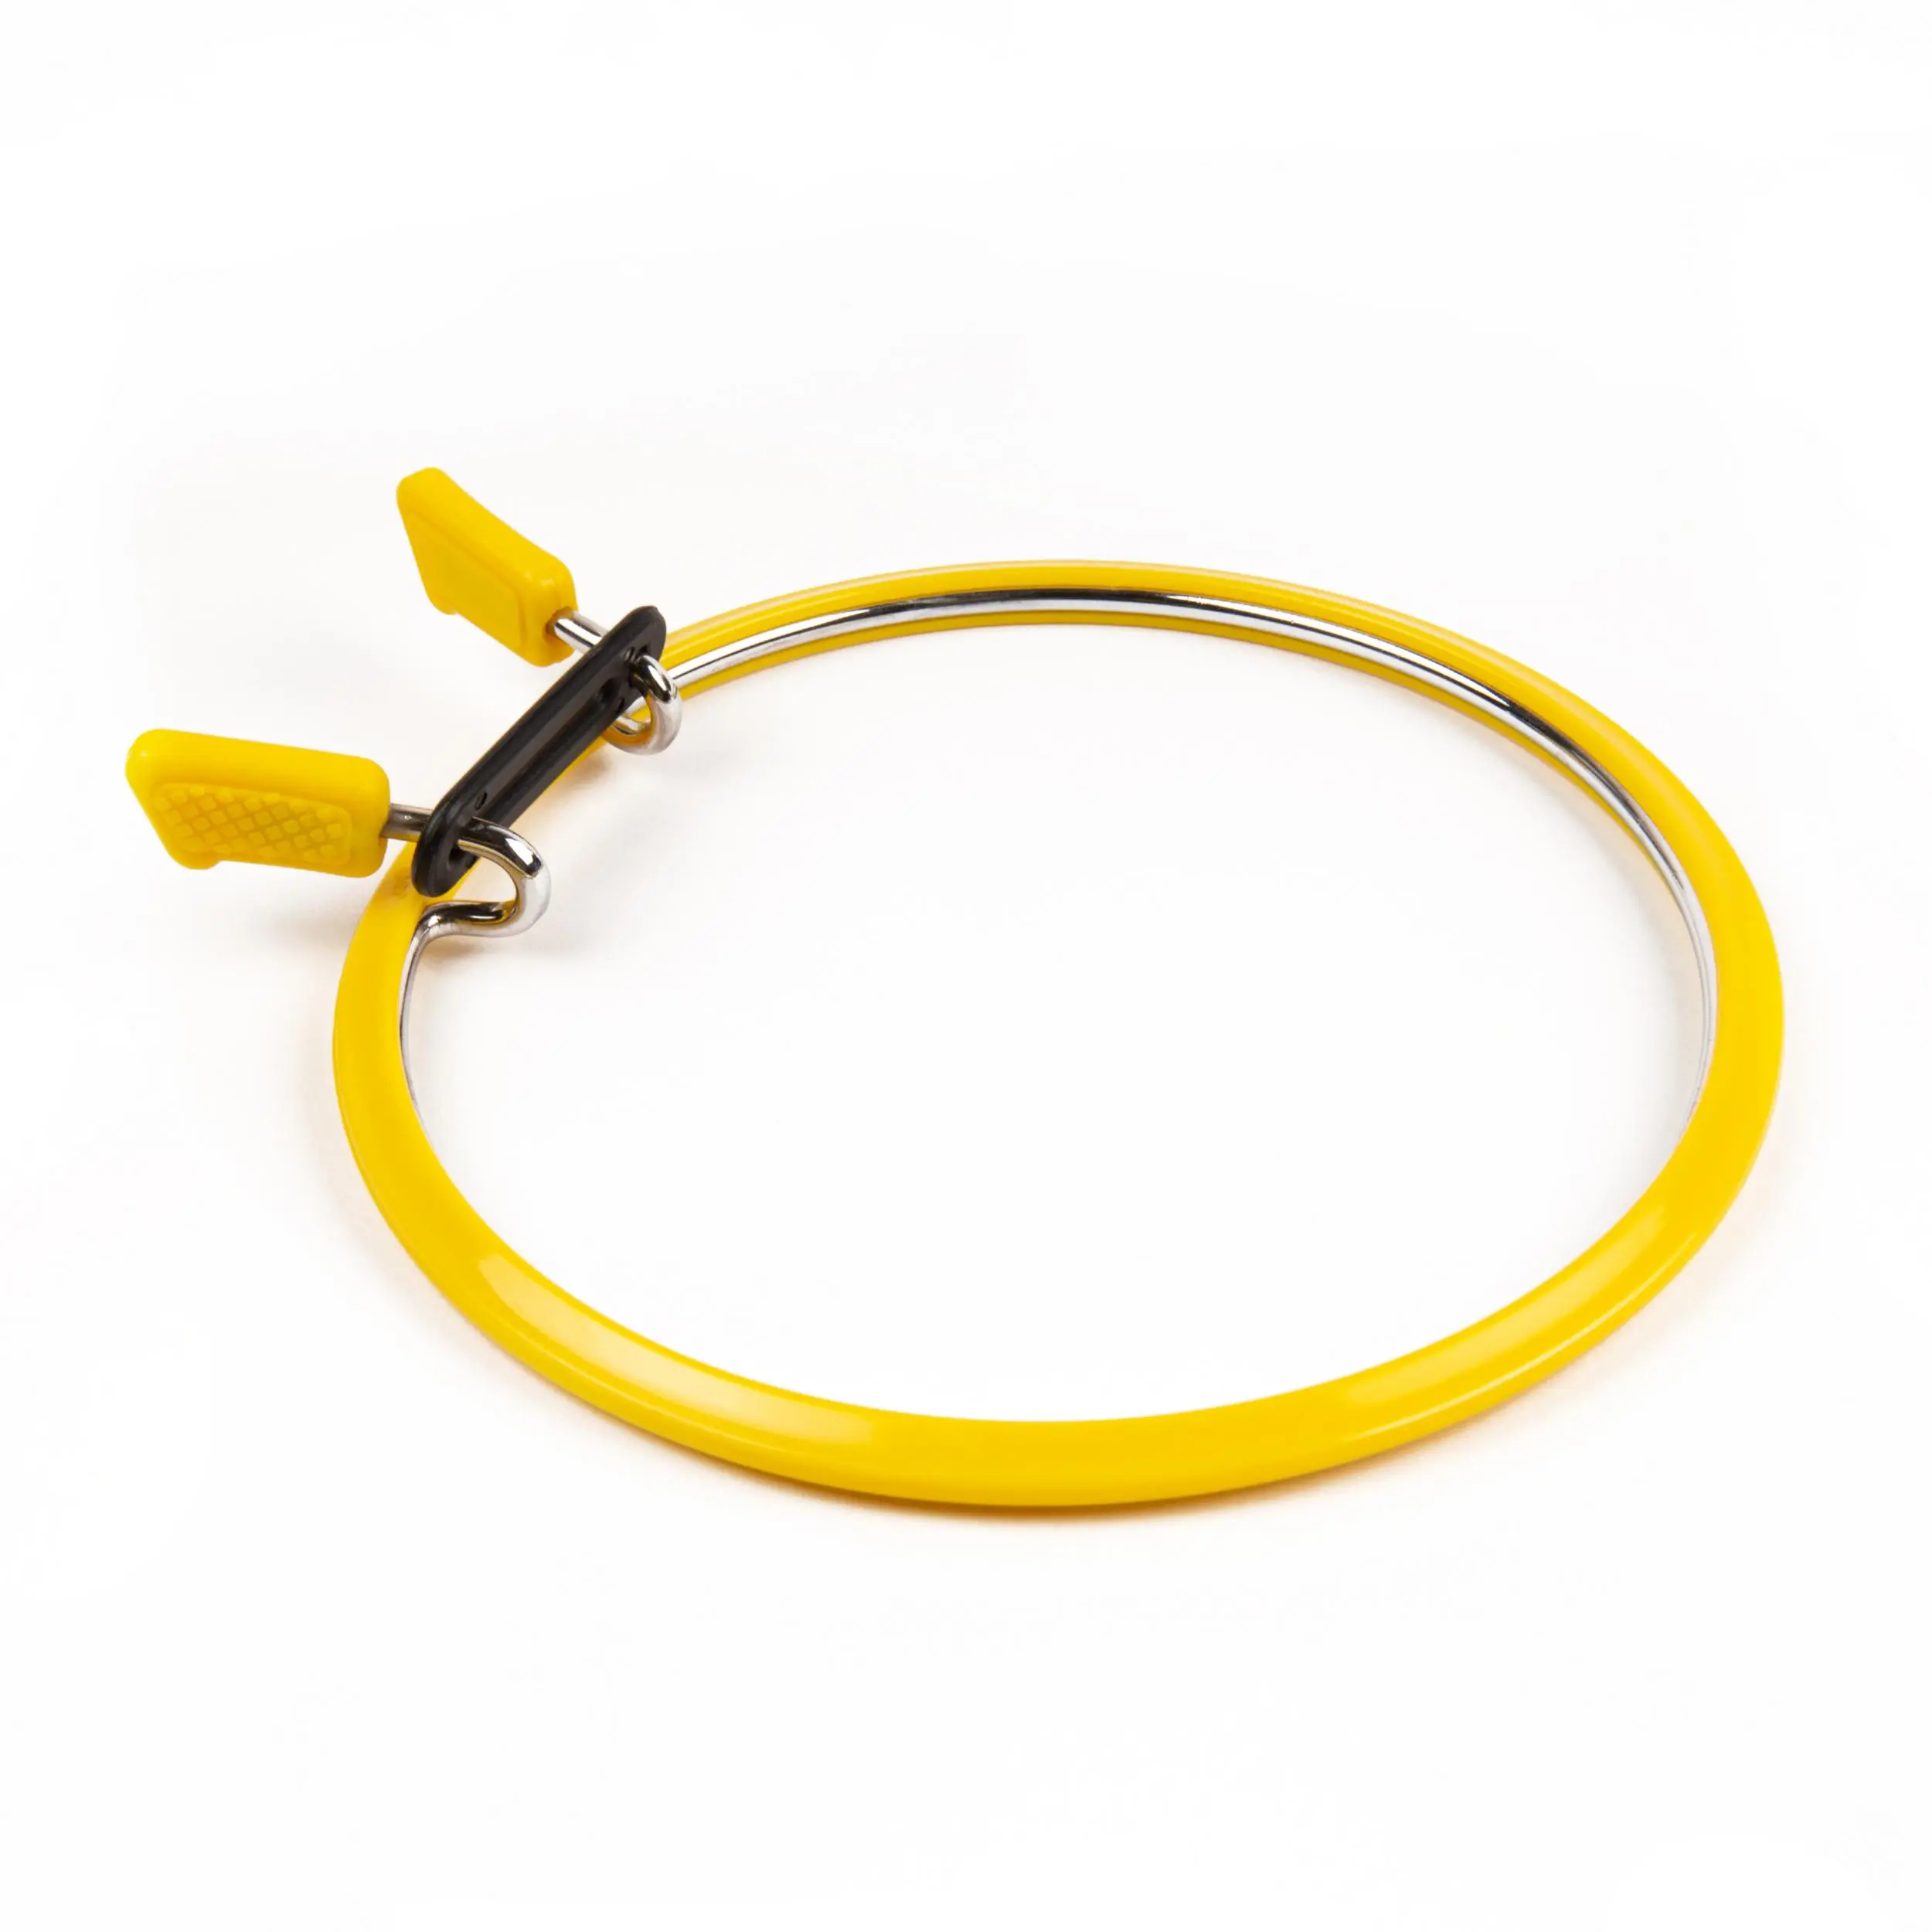 160-2/жовті Пяльці Nurge пружинні для вишивання та штопки, висота обідка 5мм, діаметр 126мм